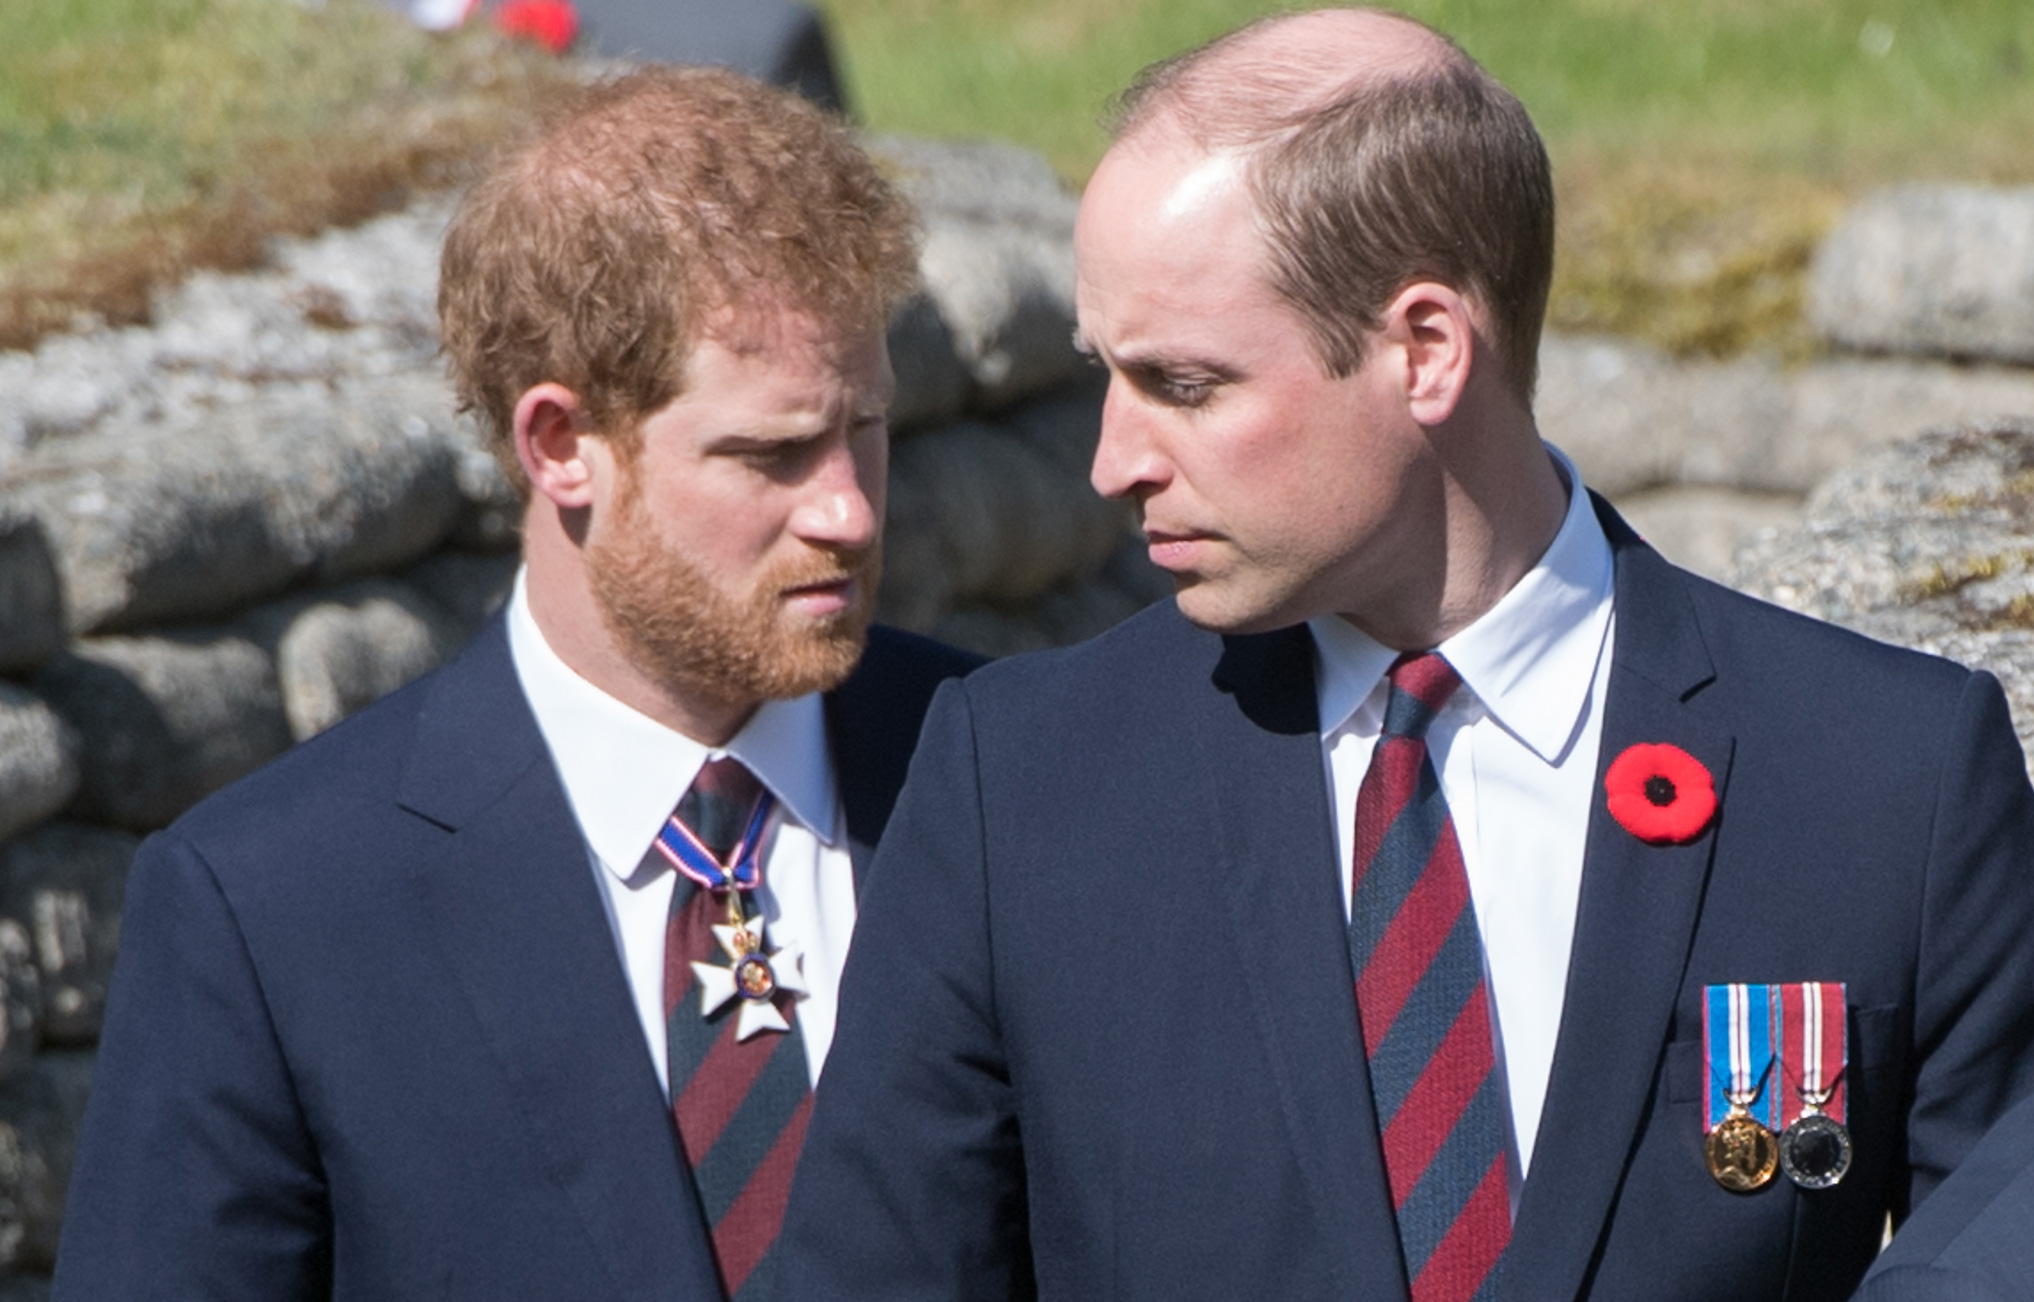 Scandalul de la Palatul Buckingham continuă: prințul Harry așteaptă scuze de la Casa Regală